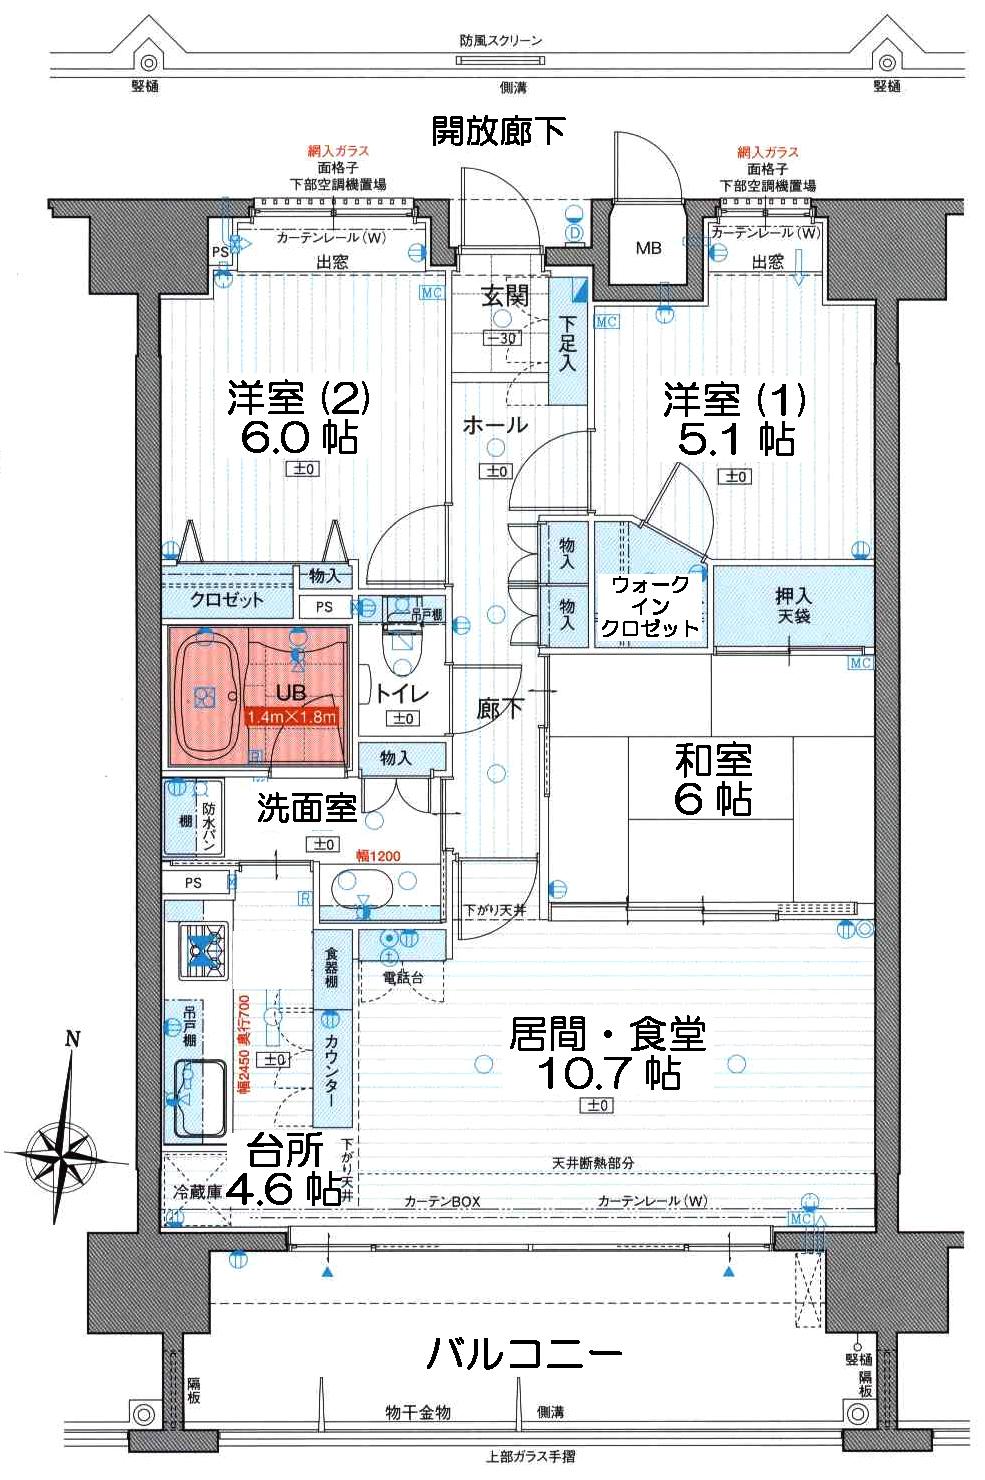 Floor plan. 3LDK, Price 19 million yen, Occupied area 74.65 sq m , Between the balcony area 14.5 sq m floor plan